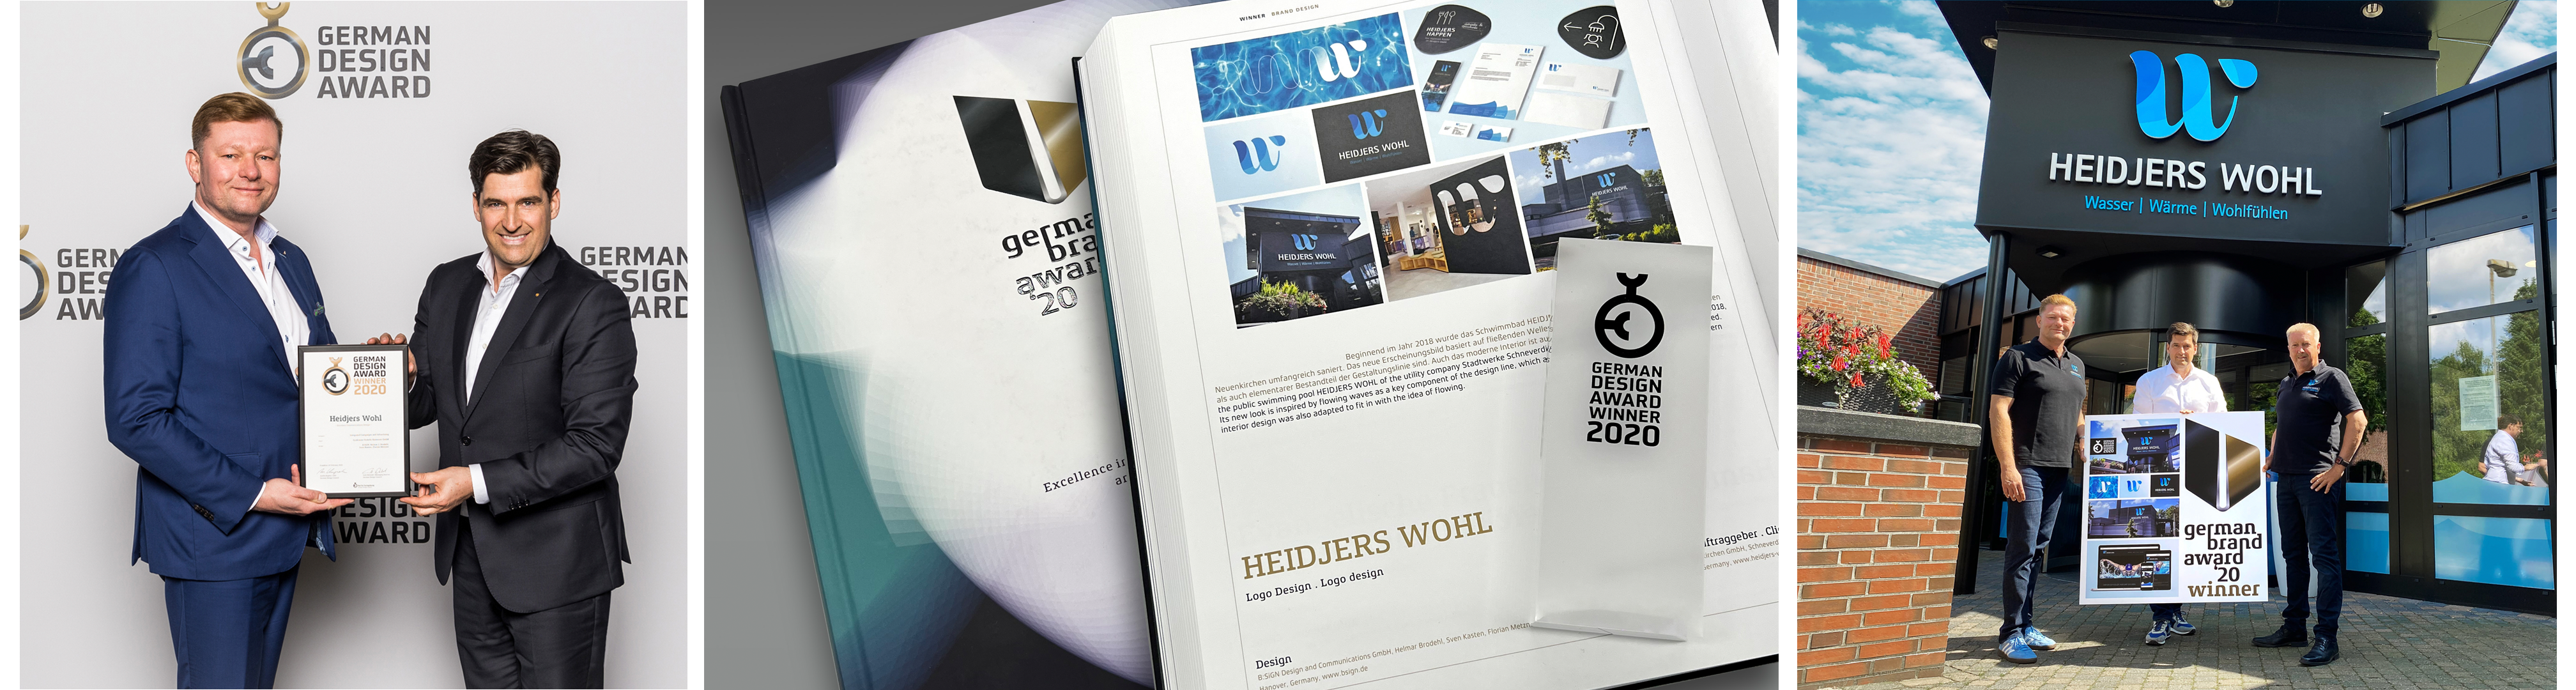 Bilder vom German Design Award für die Gestaltung des Heidjers Wohl.